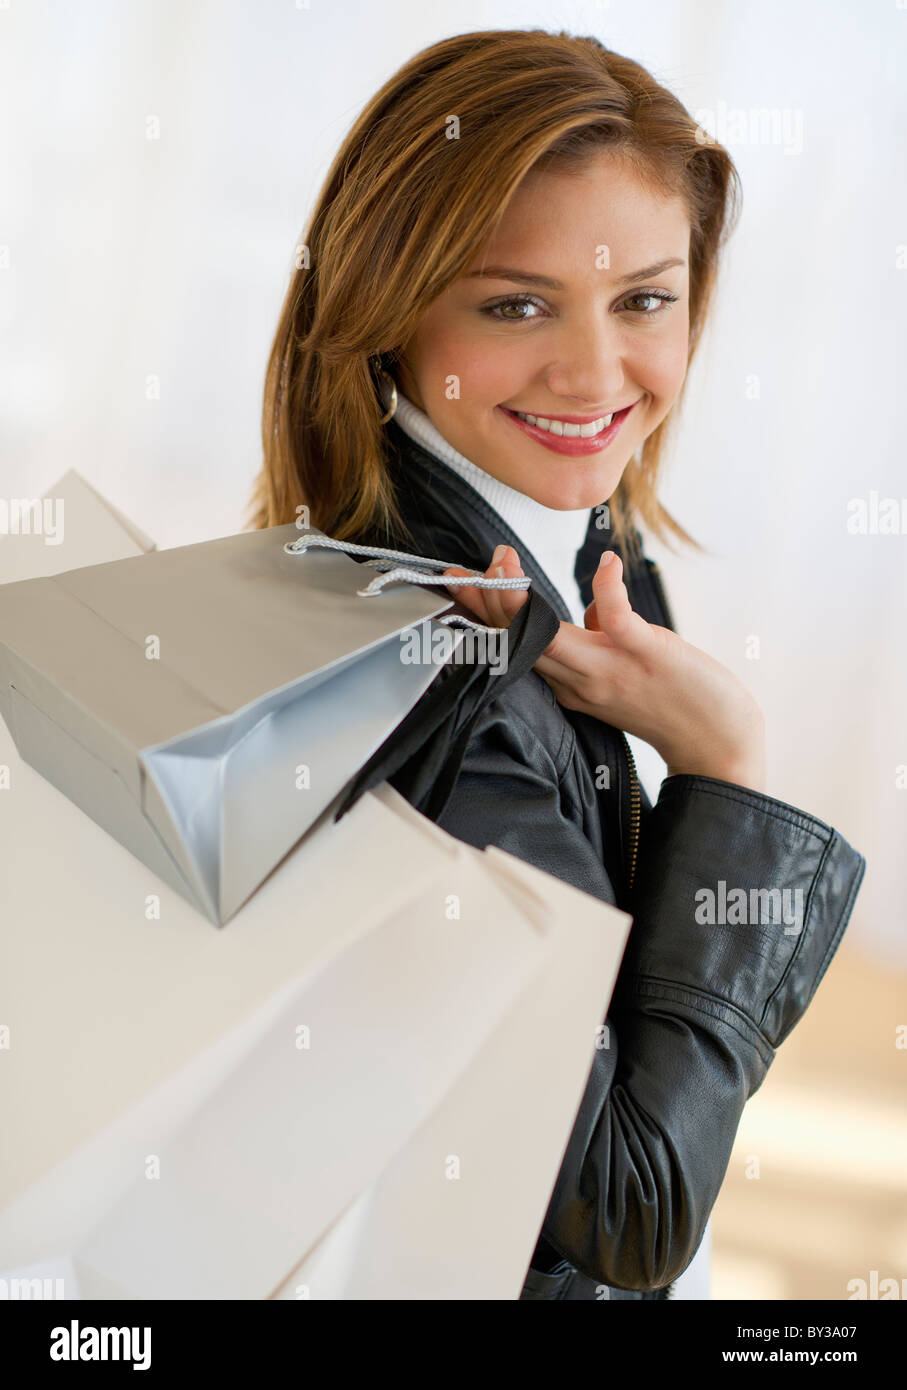 Stati Uniti d'America, New Jersey, Jersey City, Ritratto di giovane donna con le borse della spesa Foto Stock